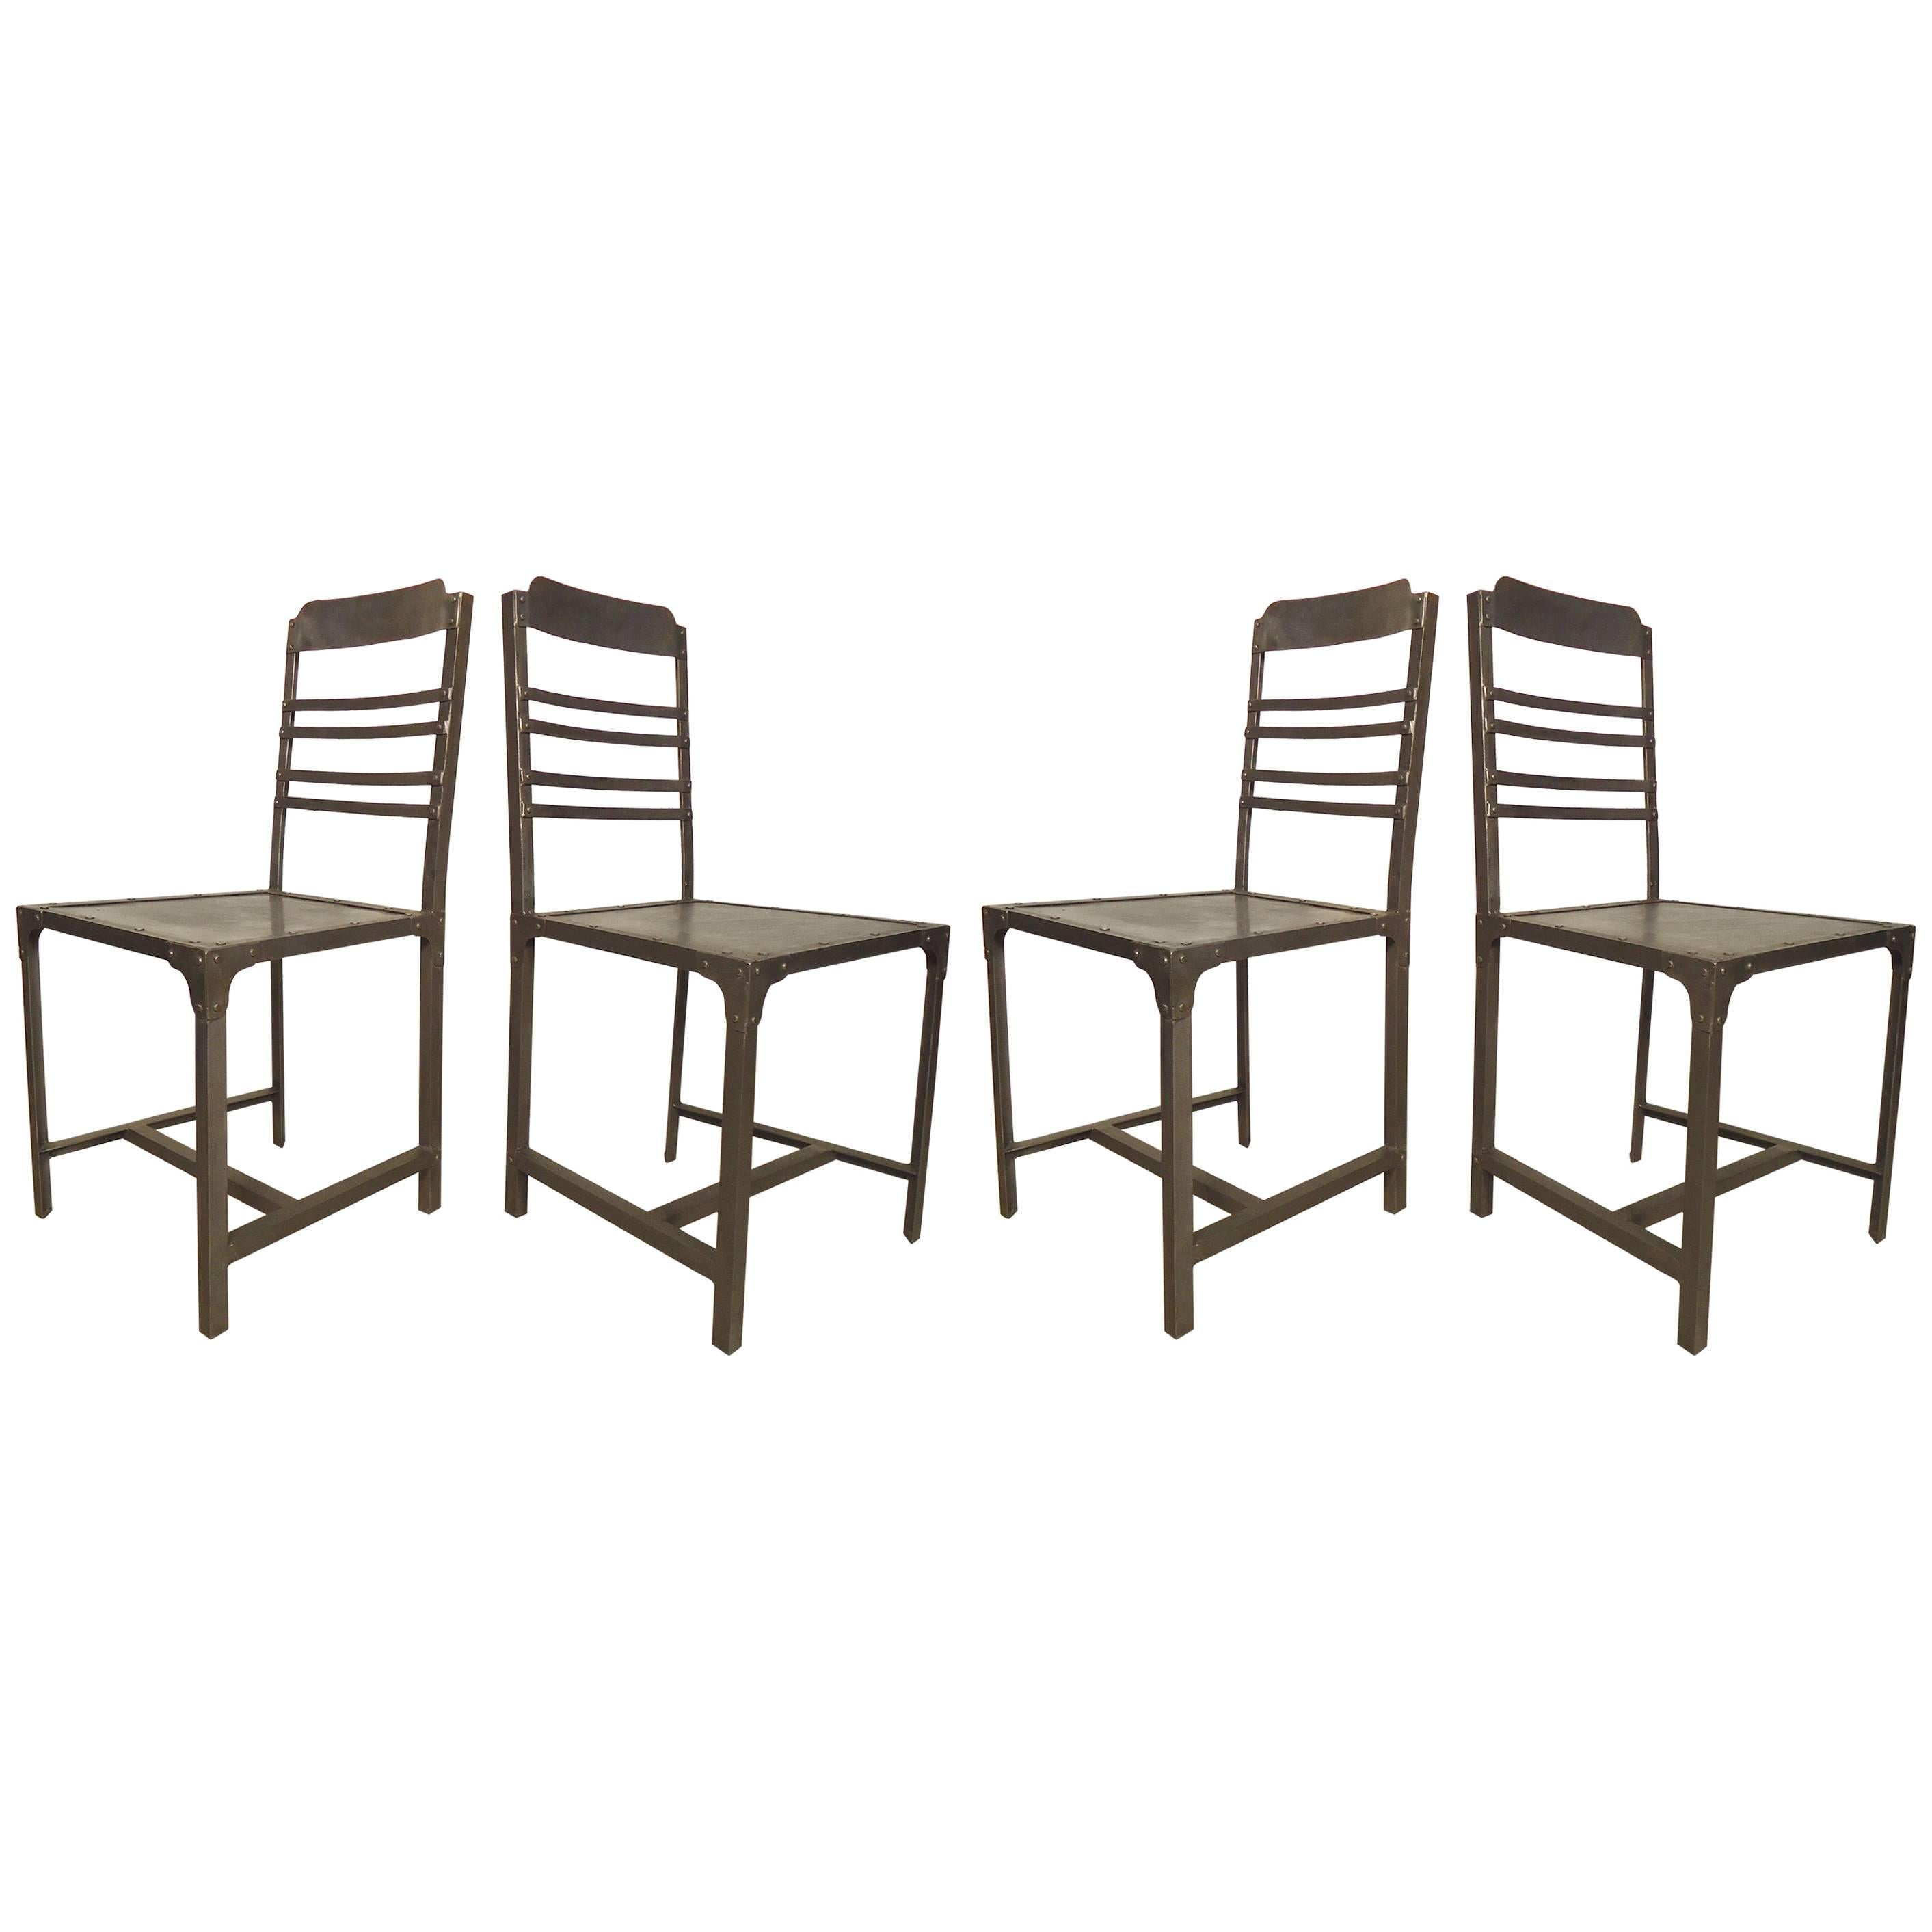 Ensemble de quatre chaises de style industriel